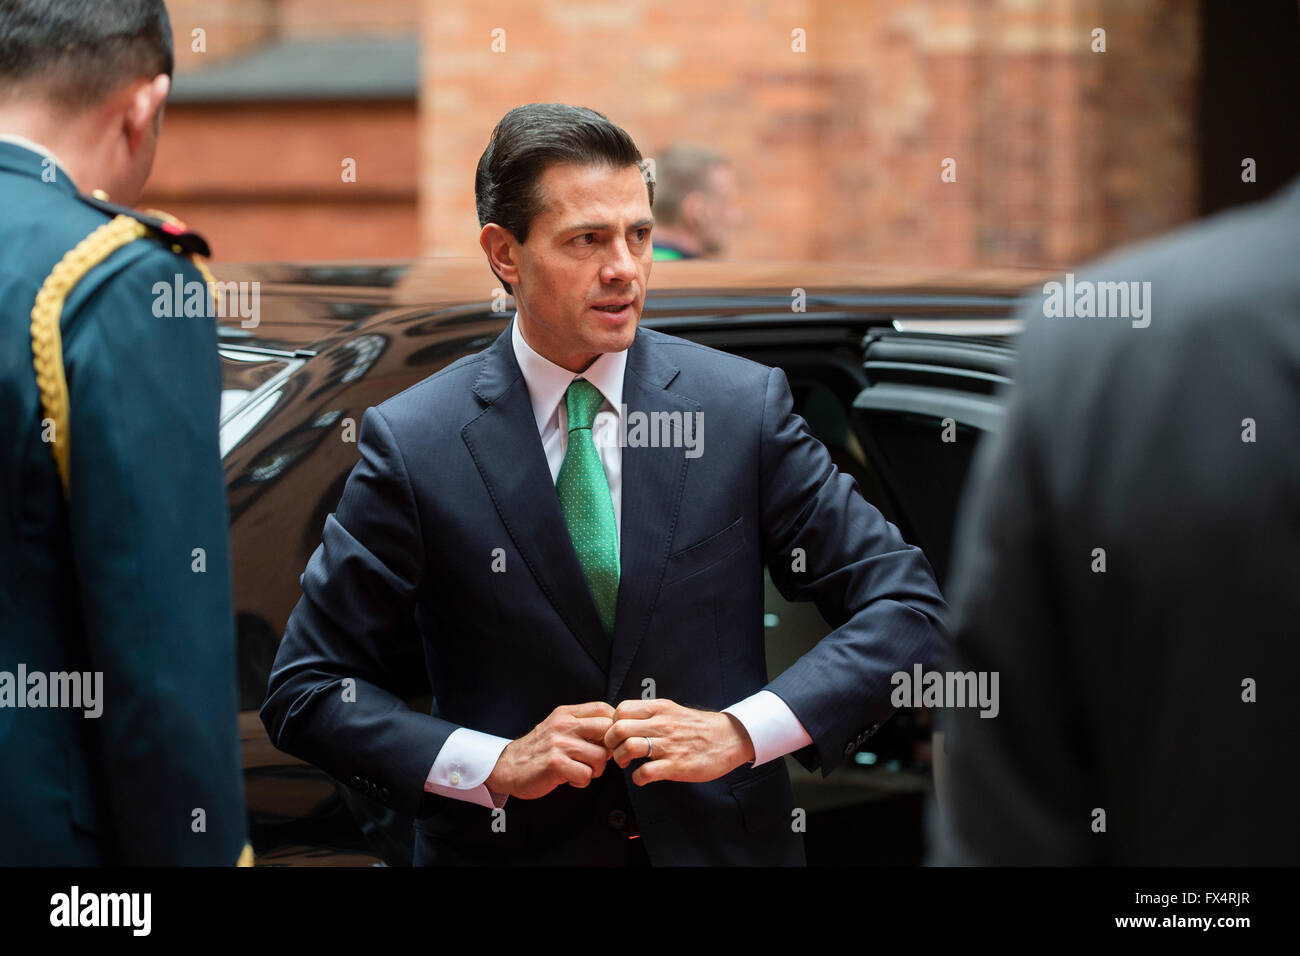 Berlin, Allemagne. Apr 11, 2016. Le Président mexicain Enrique Pena Nieto arrive de rencontrer le maire de Berlin à l'Hôtel de Ville à Berlin, Allemagne, 11 avril 2016. Photo : GREGOR FISCHER/dpa/Alamy Live News Banque D'Images